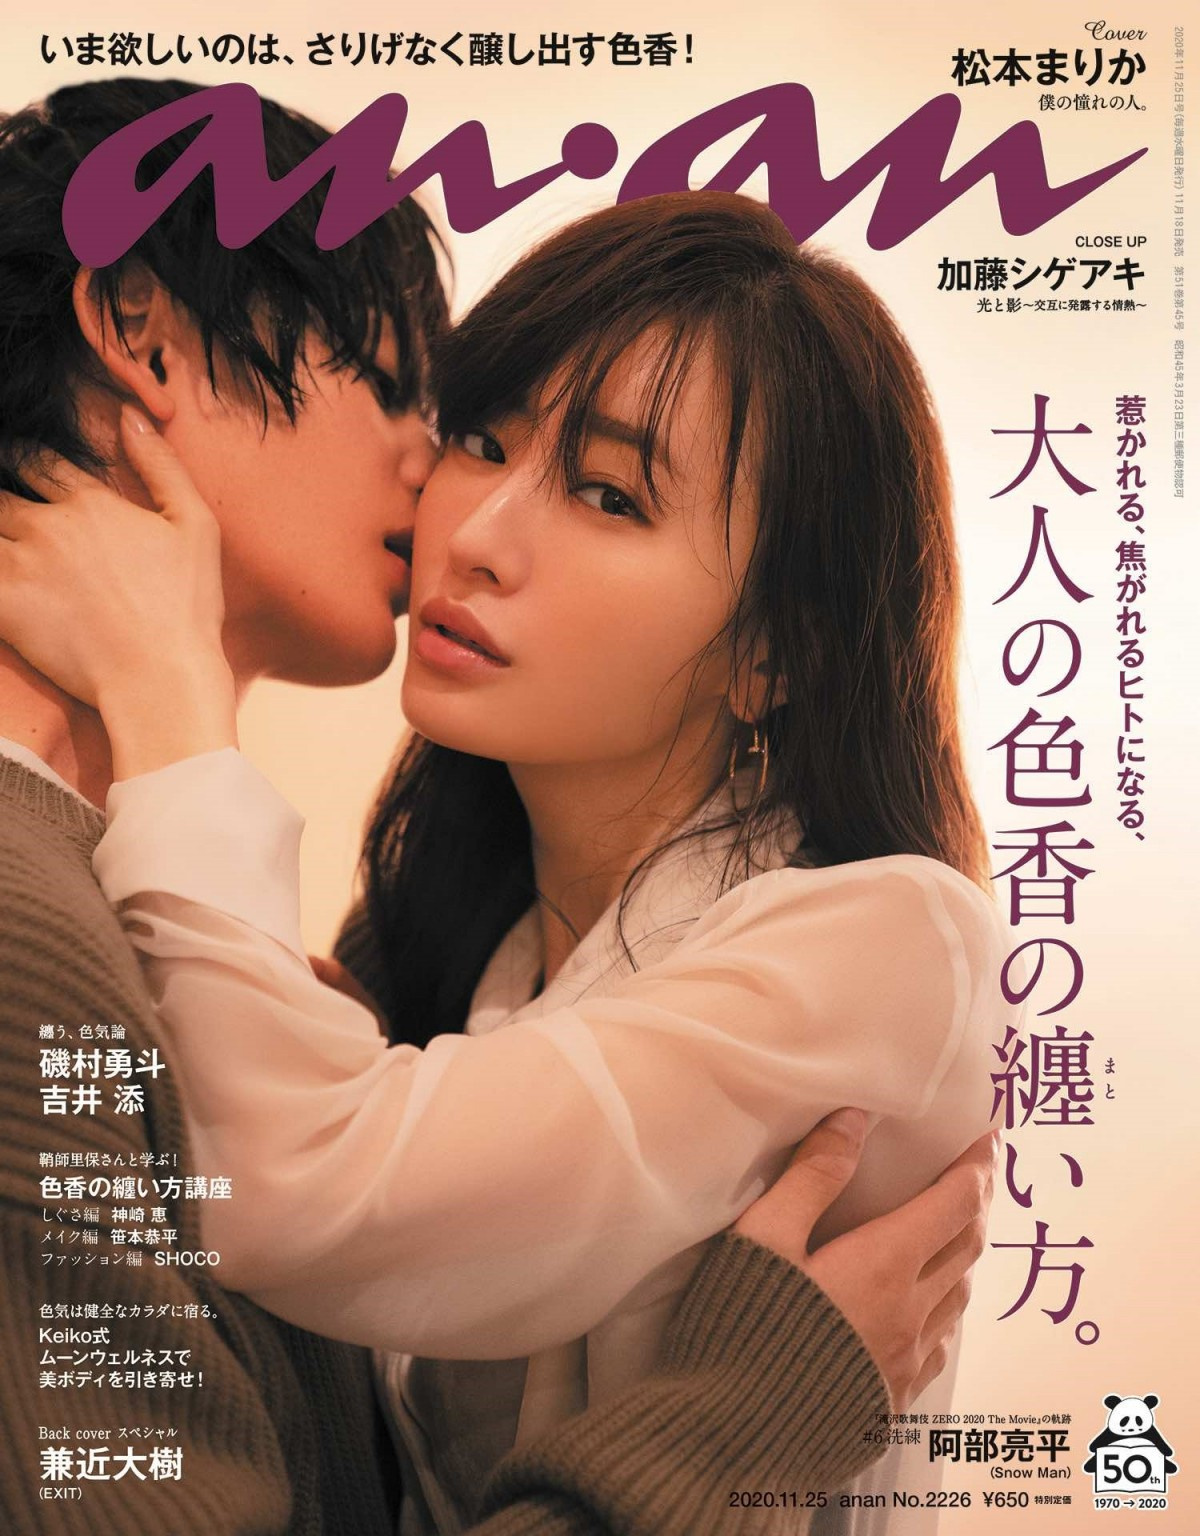 松本まりか 年下男子をキスに誘う 逆顎クイ ドキドキシーンに体当たりで挑戦 Oricon News